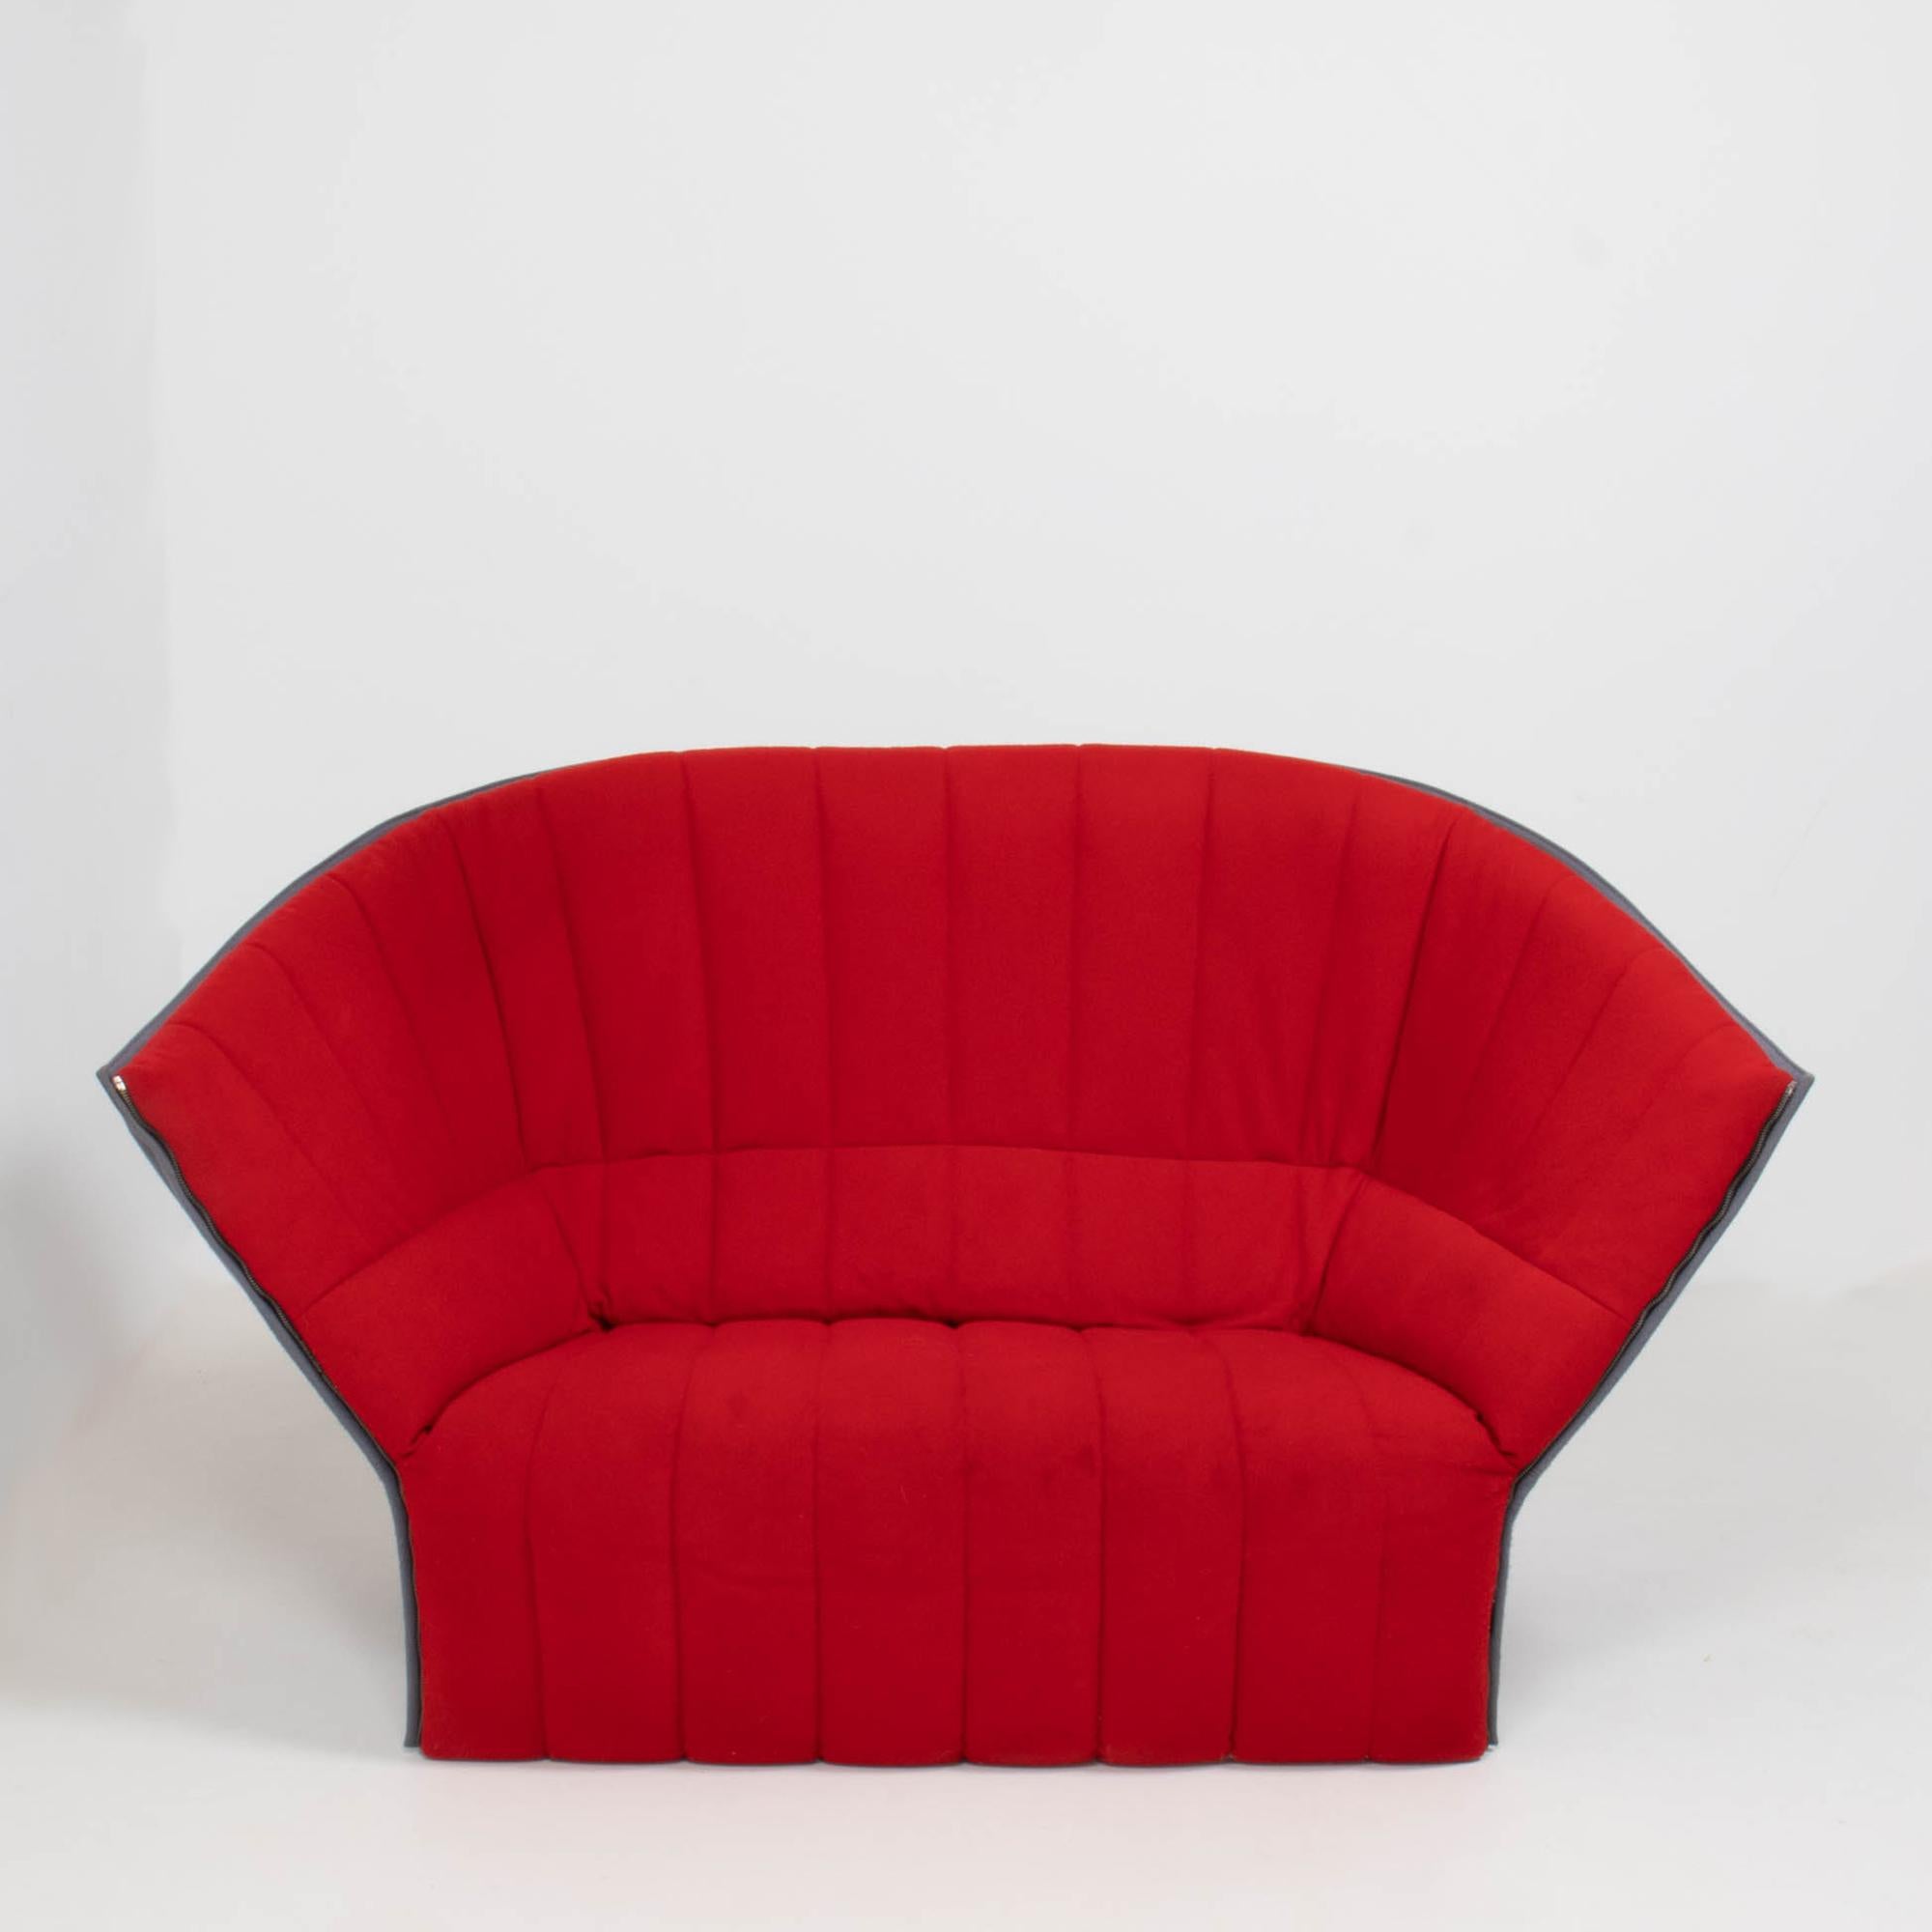 Das von Inga Sempé für Ligne Roset entworfene Moel-Liegesofa ist ein auffallendes Stück zeitgenössischen Designs.

Die muschelartige Silhouette des Moel-Liegesofas zeichnet sich durch eine gesteppte Sitzvorderseite aus leuchtend rotem Stoff und